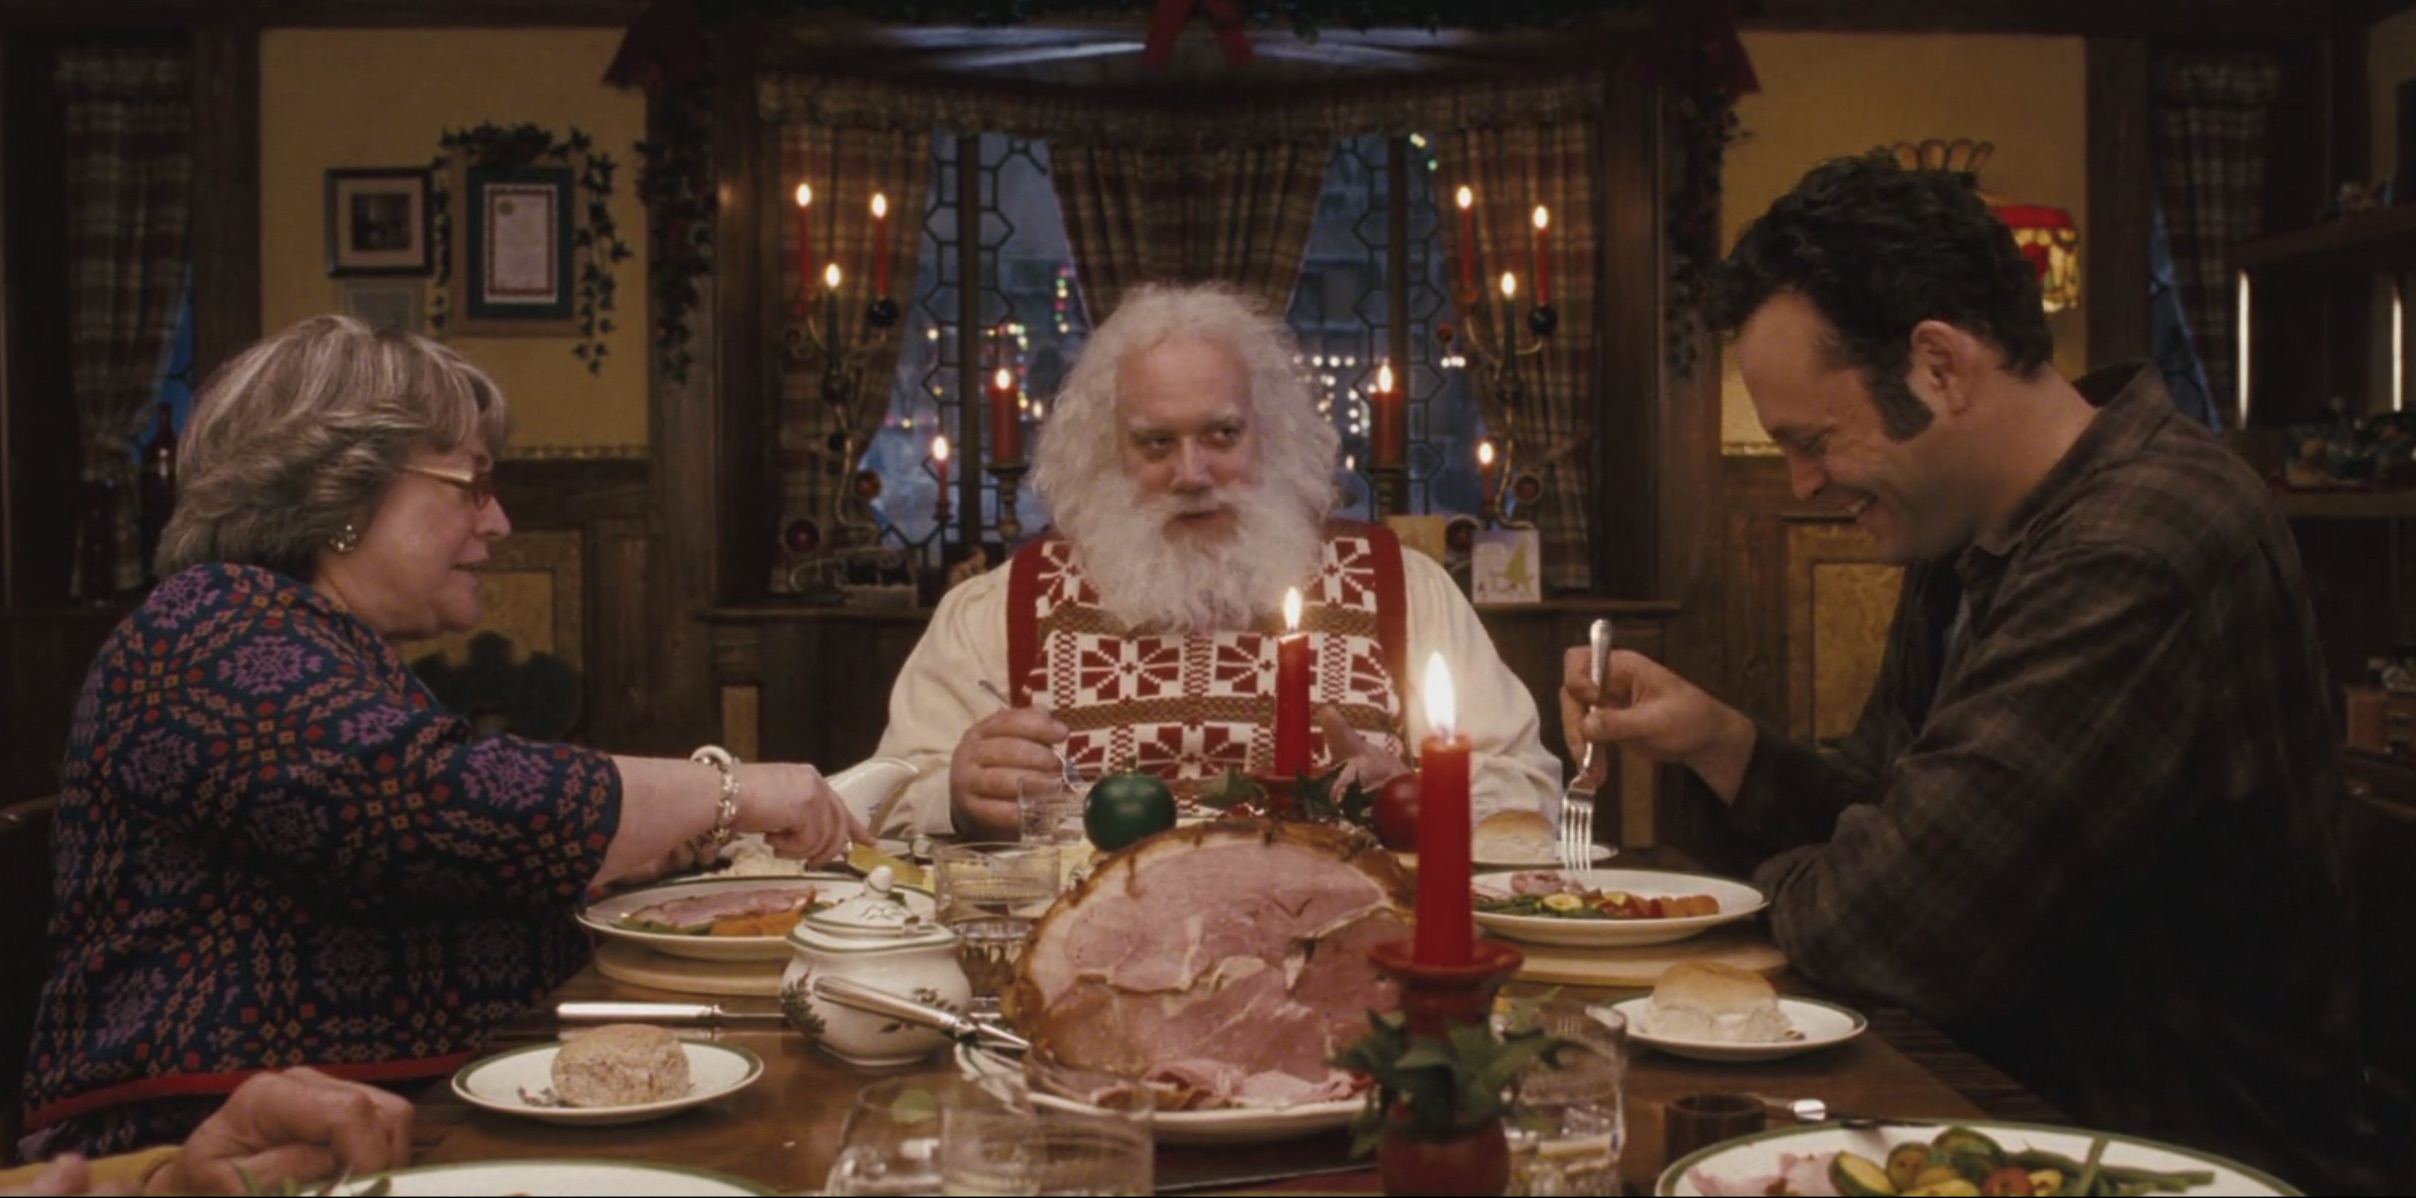 Tres personas se sientan a cenar en una escena de Fred Claus.